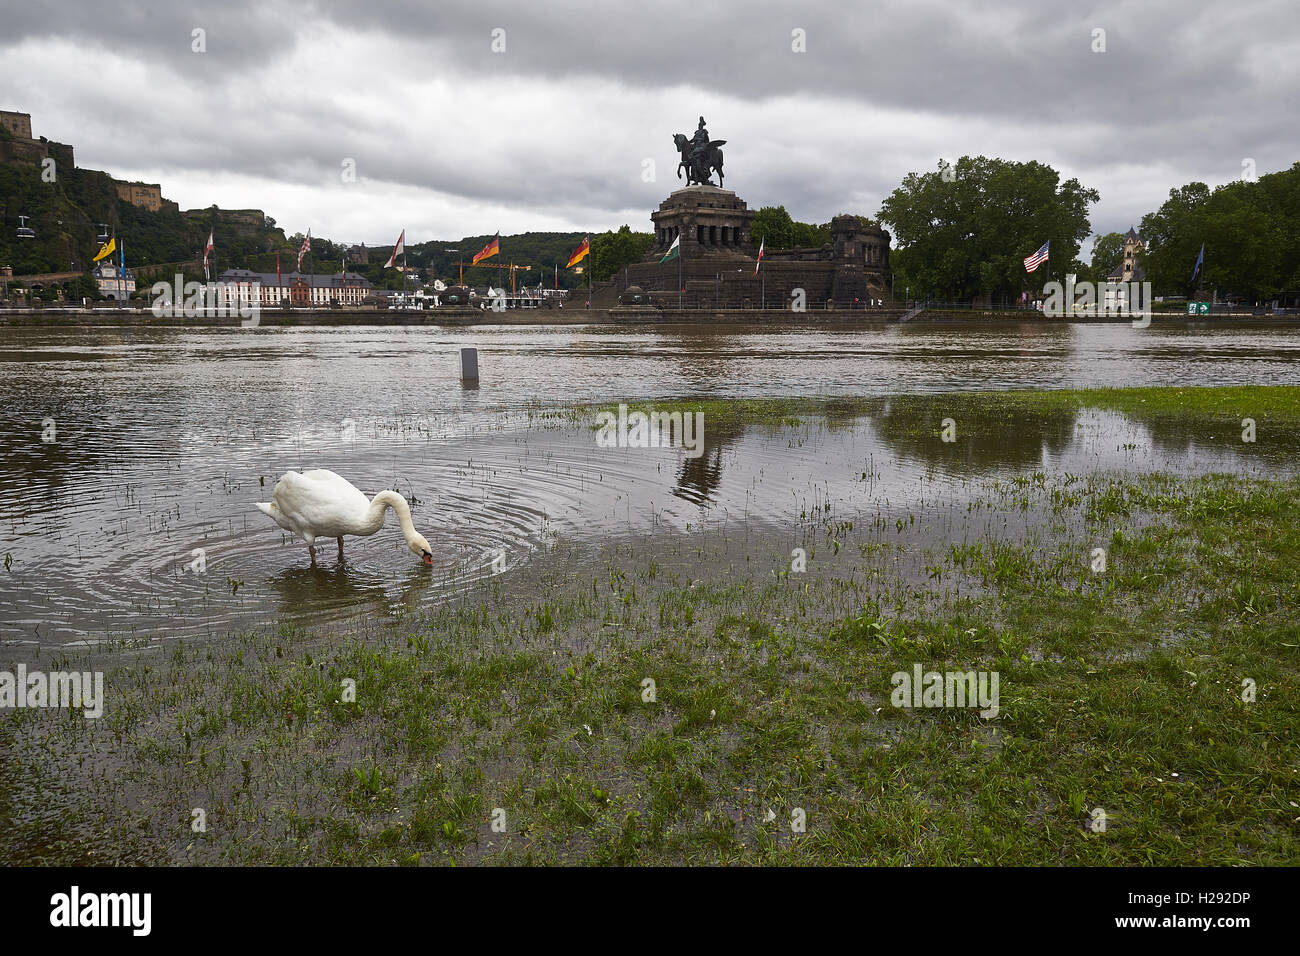 Swan en pradera inundada permanente, exceso de agua en el Deutsches Eck o Rincón Alemán, Koblenz, Renania-Palatinado, Alemania Foto de stock